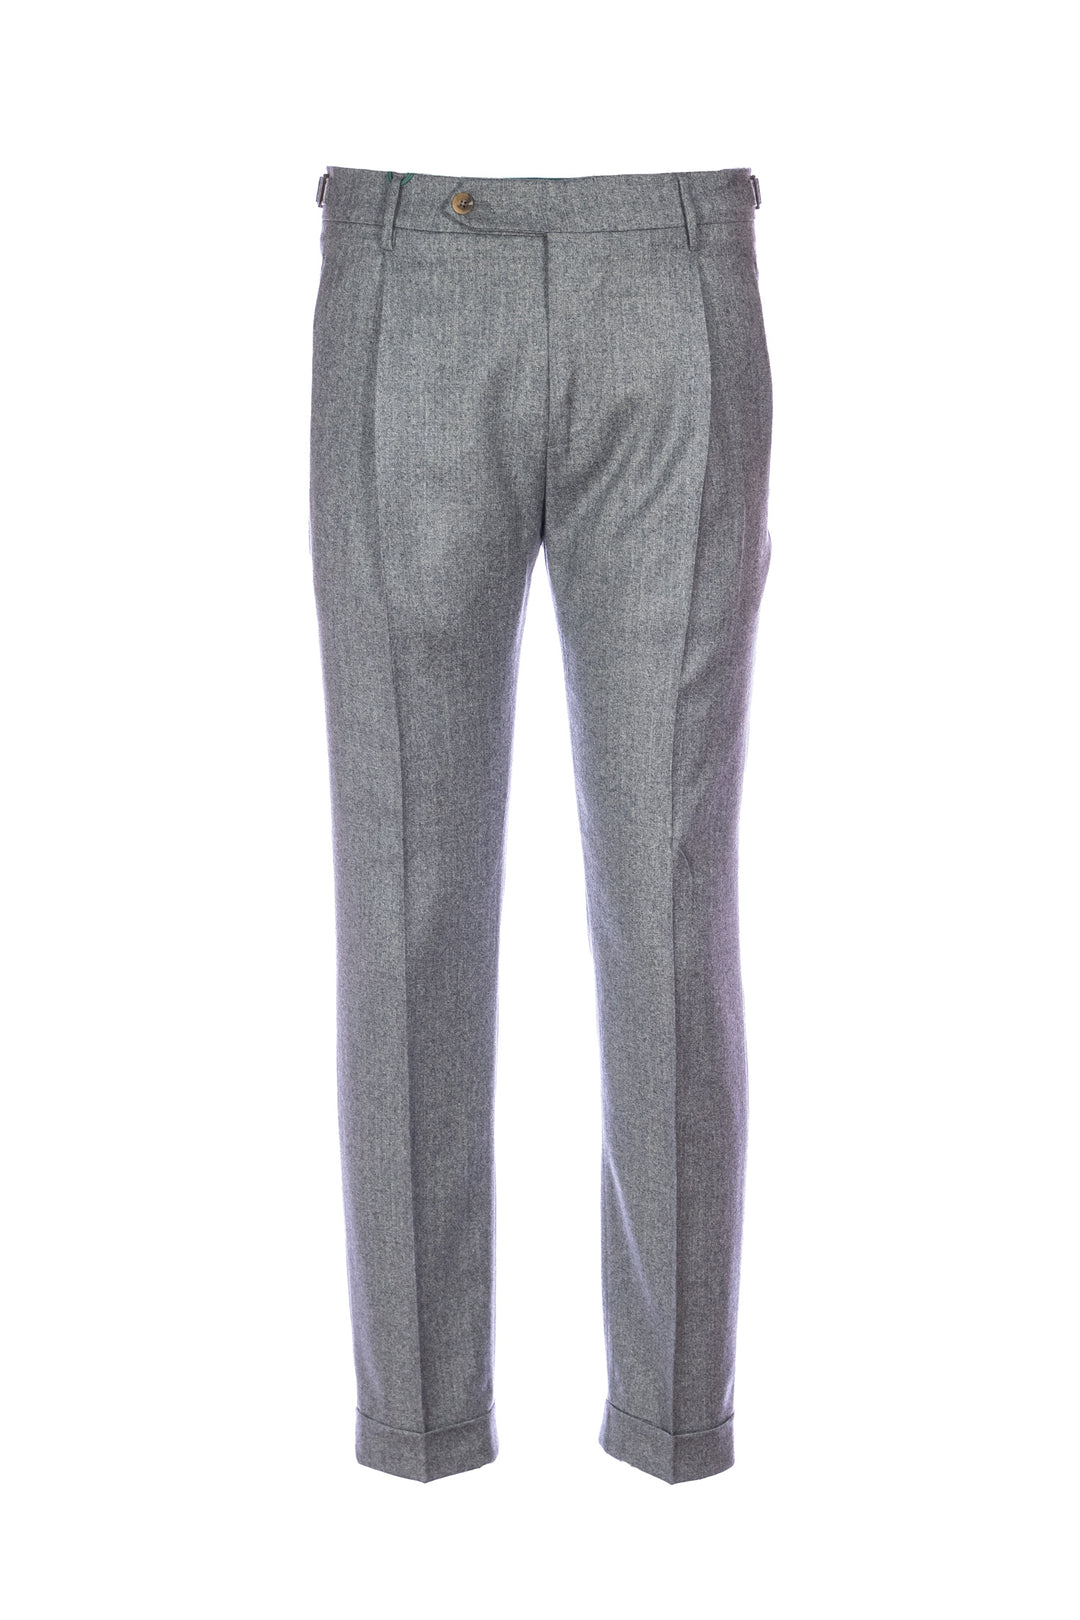 BERWICH Pantalone retro grigio in lana vergine stretch con una pince - Mancinelli 1954